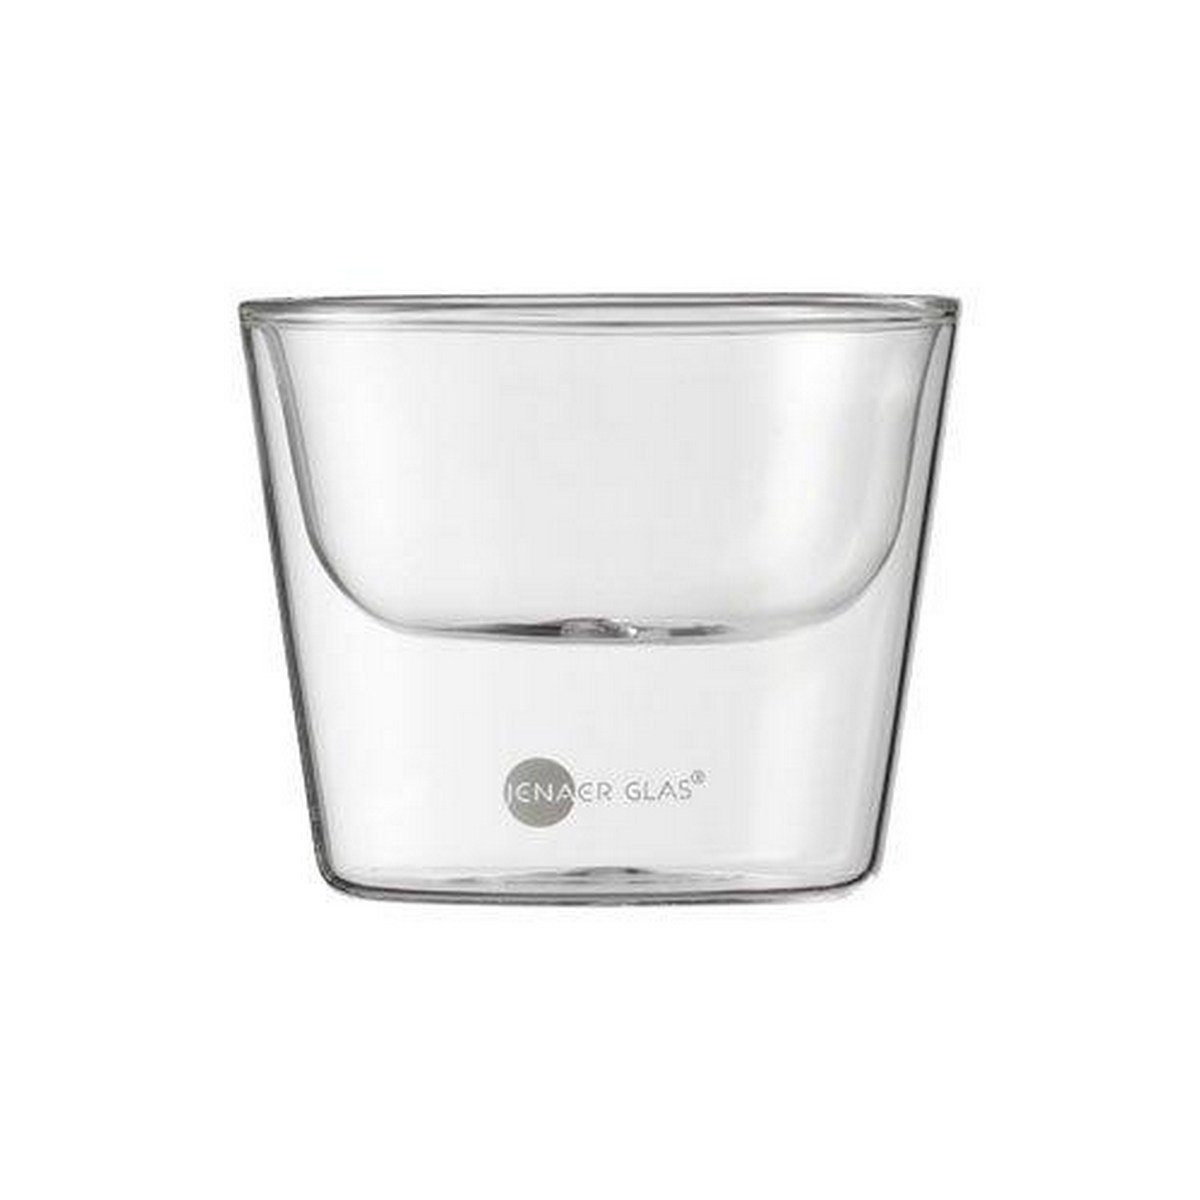 Jenaer Glas Schale Gourmet Food & Drinks Hot'n Cool, Borosilikatglas, 0,1 L